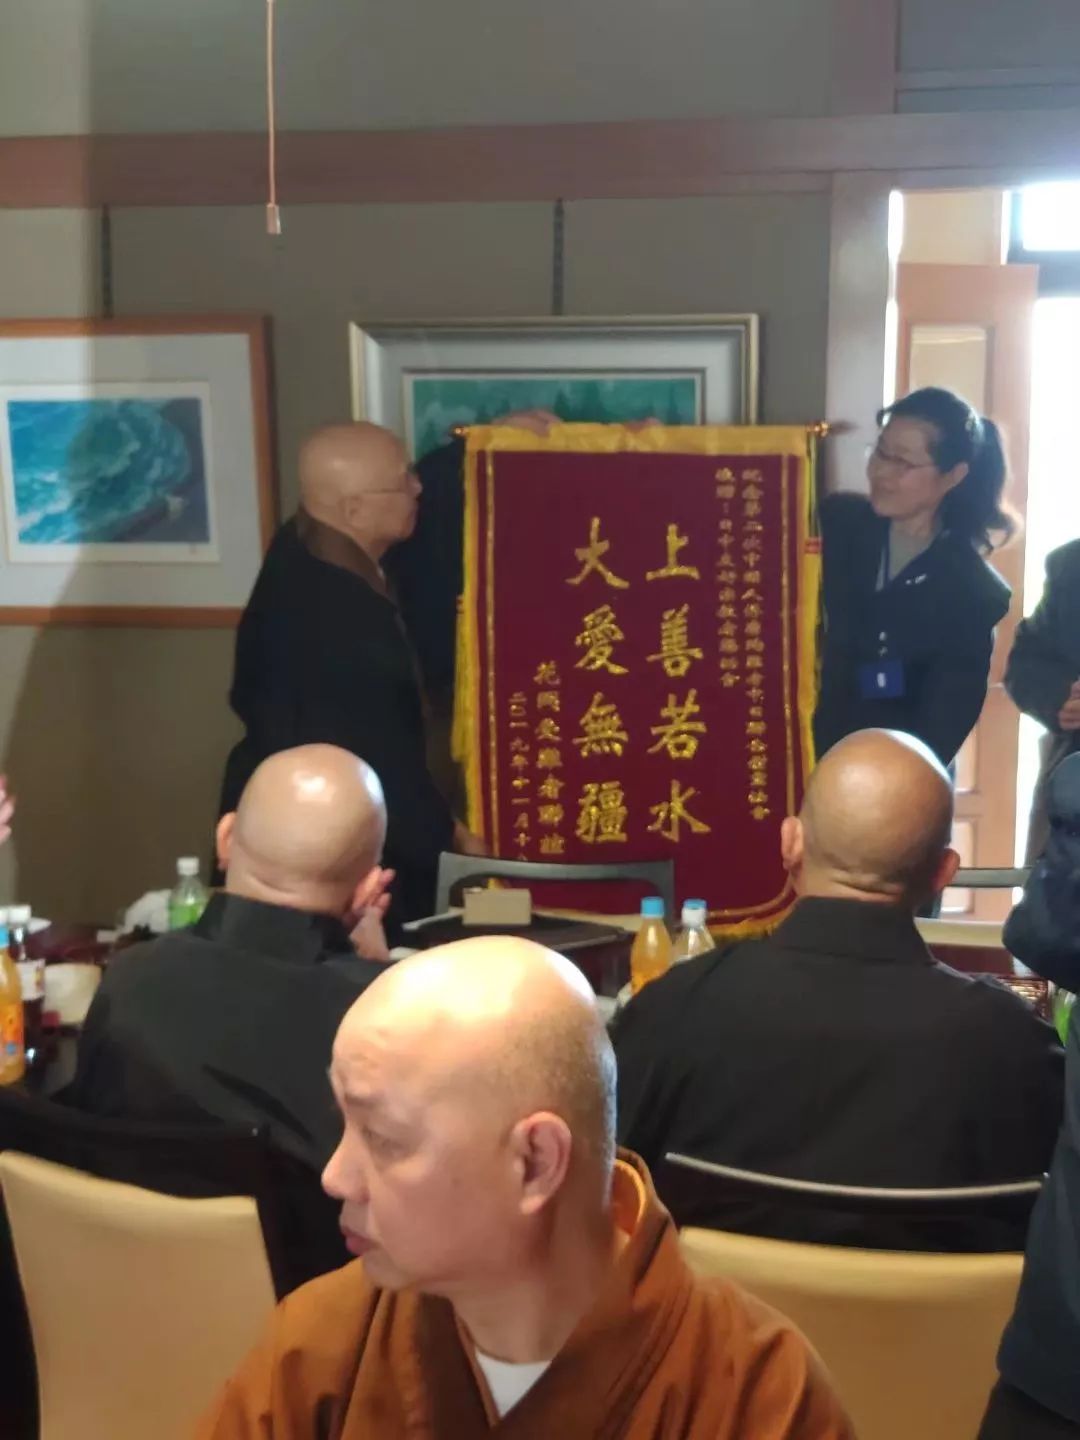 竹林新闻 | 中国被强征劳工死难者追悼活动在东京举行  妙江副会长出席活动